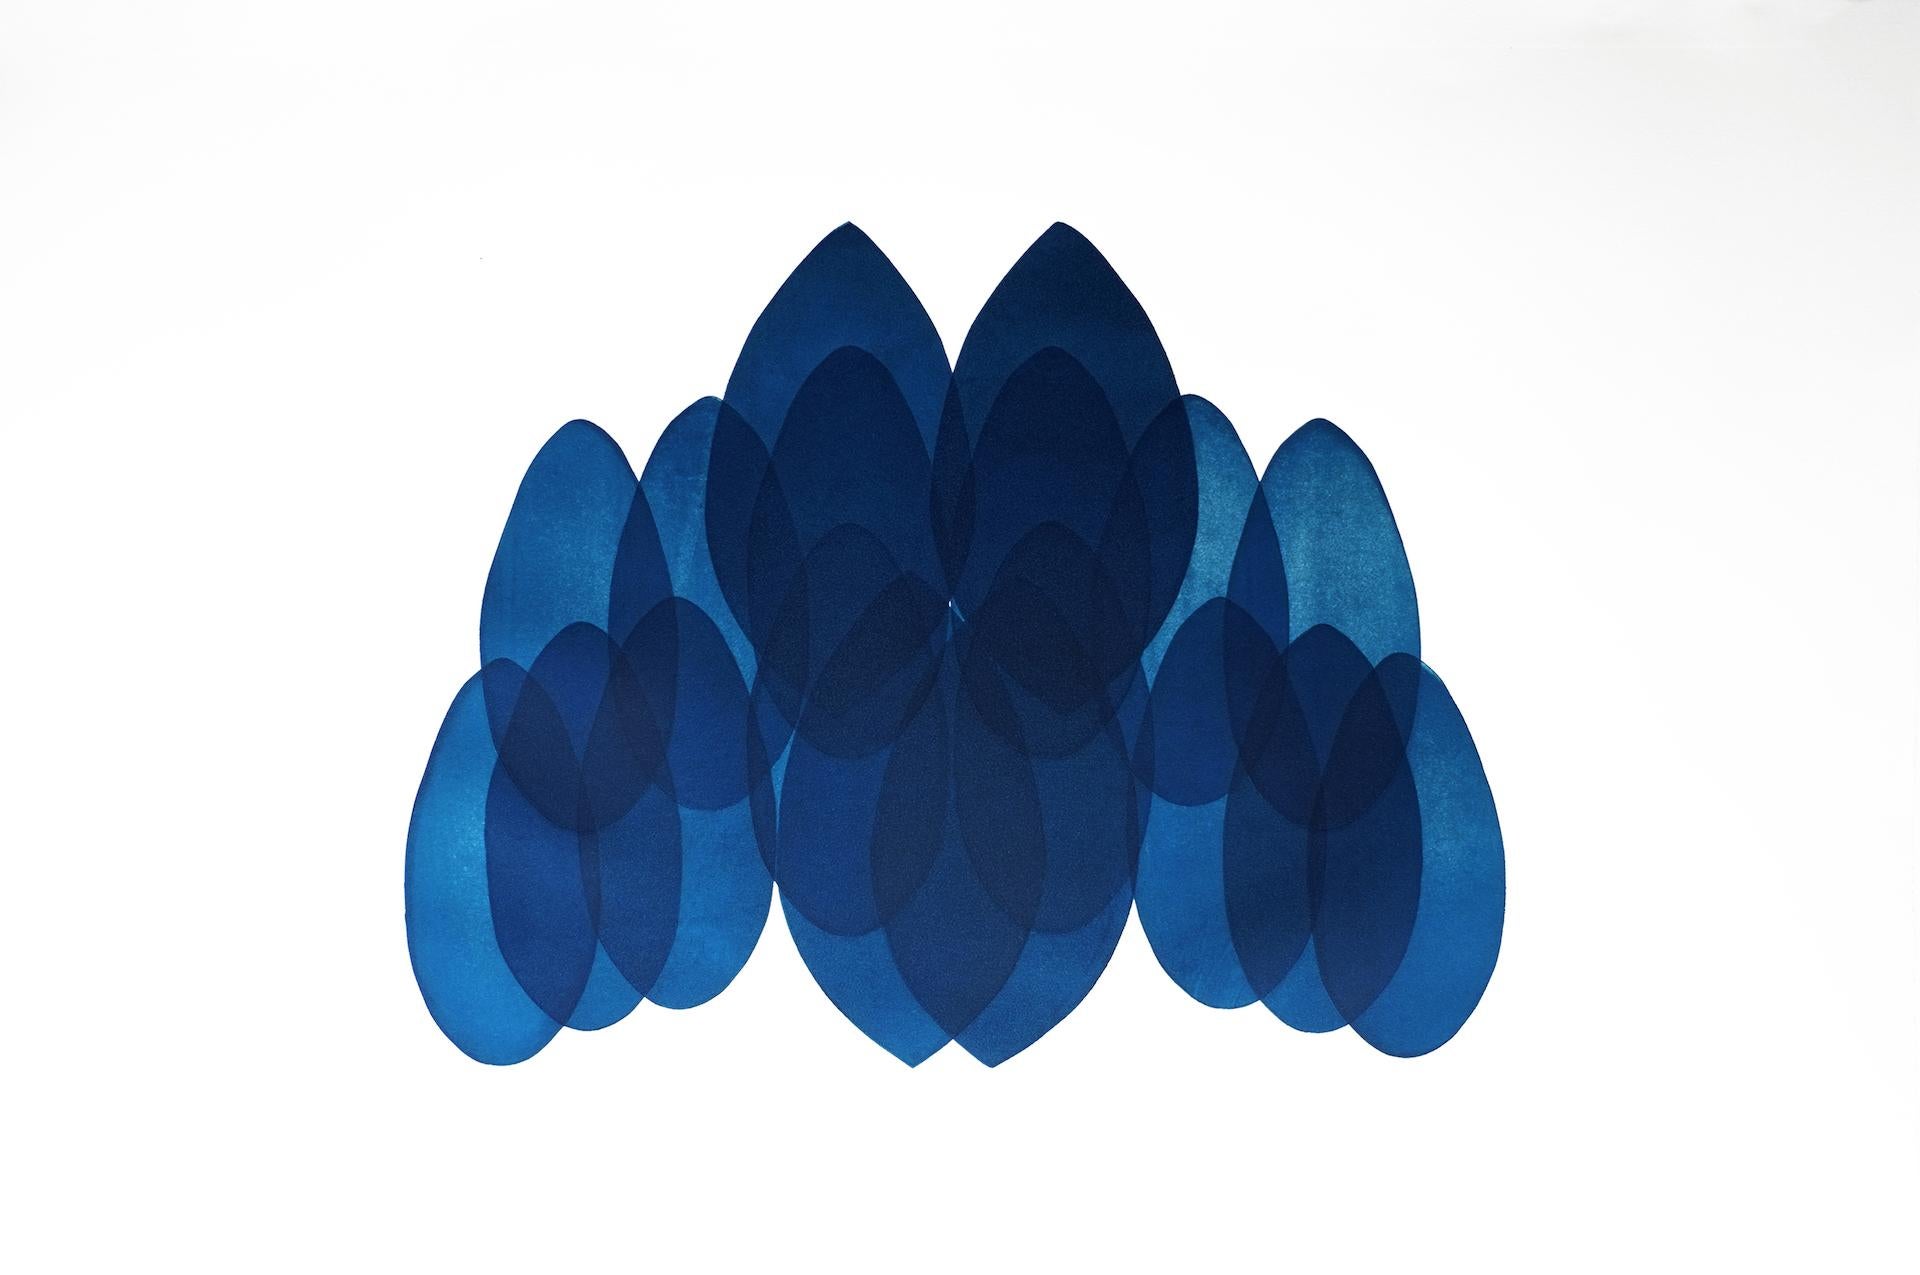 NV24, Art contemporain original, Art abstrait bleu et blanc, Art géométrique 